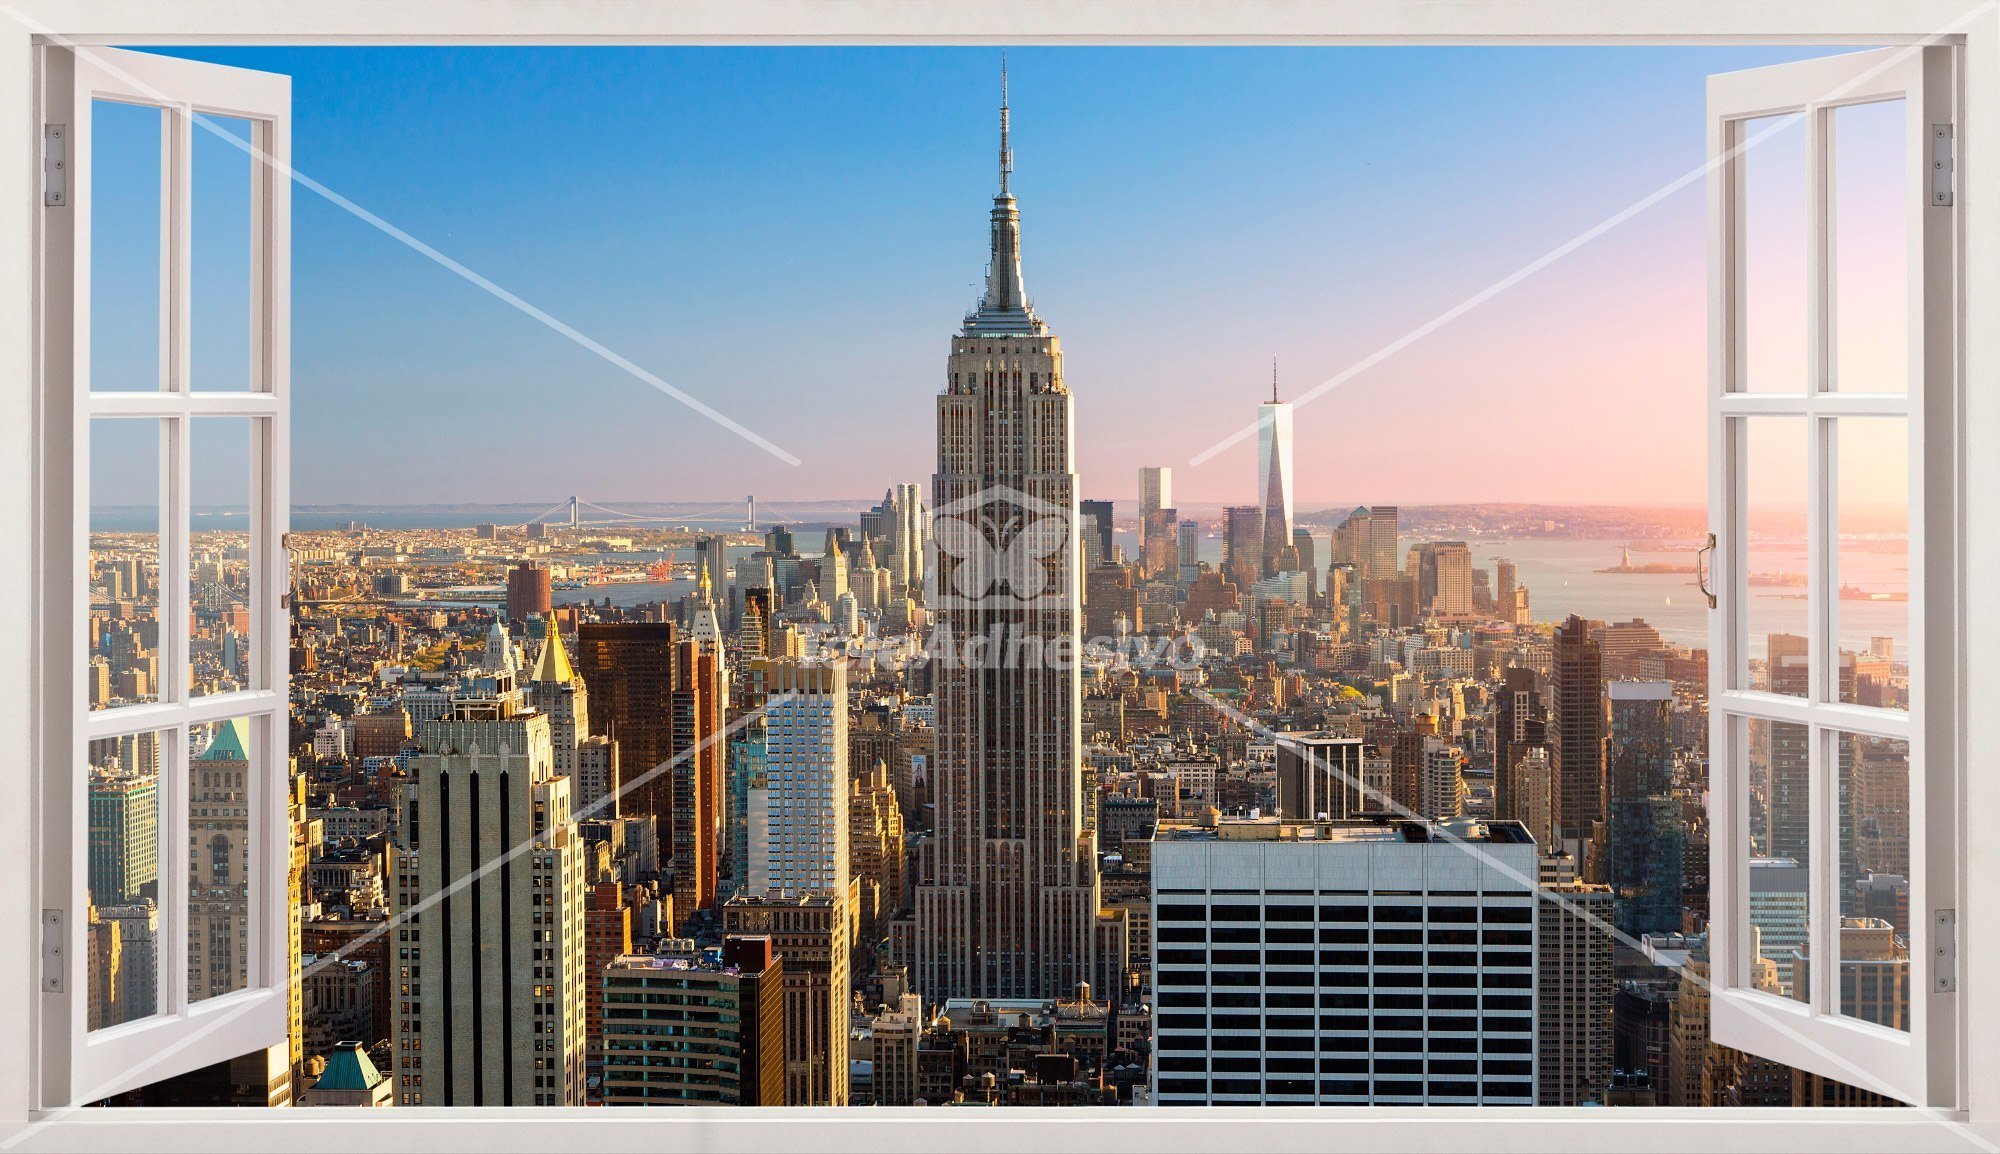 Wandtattoos: Fliegen zum Empire State Building